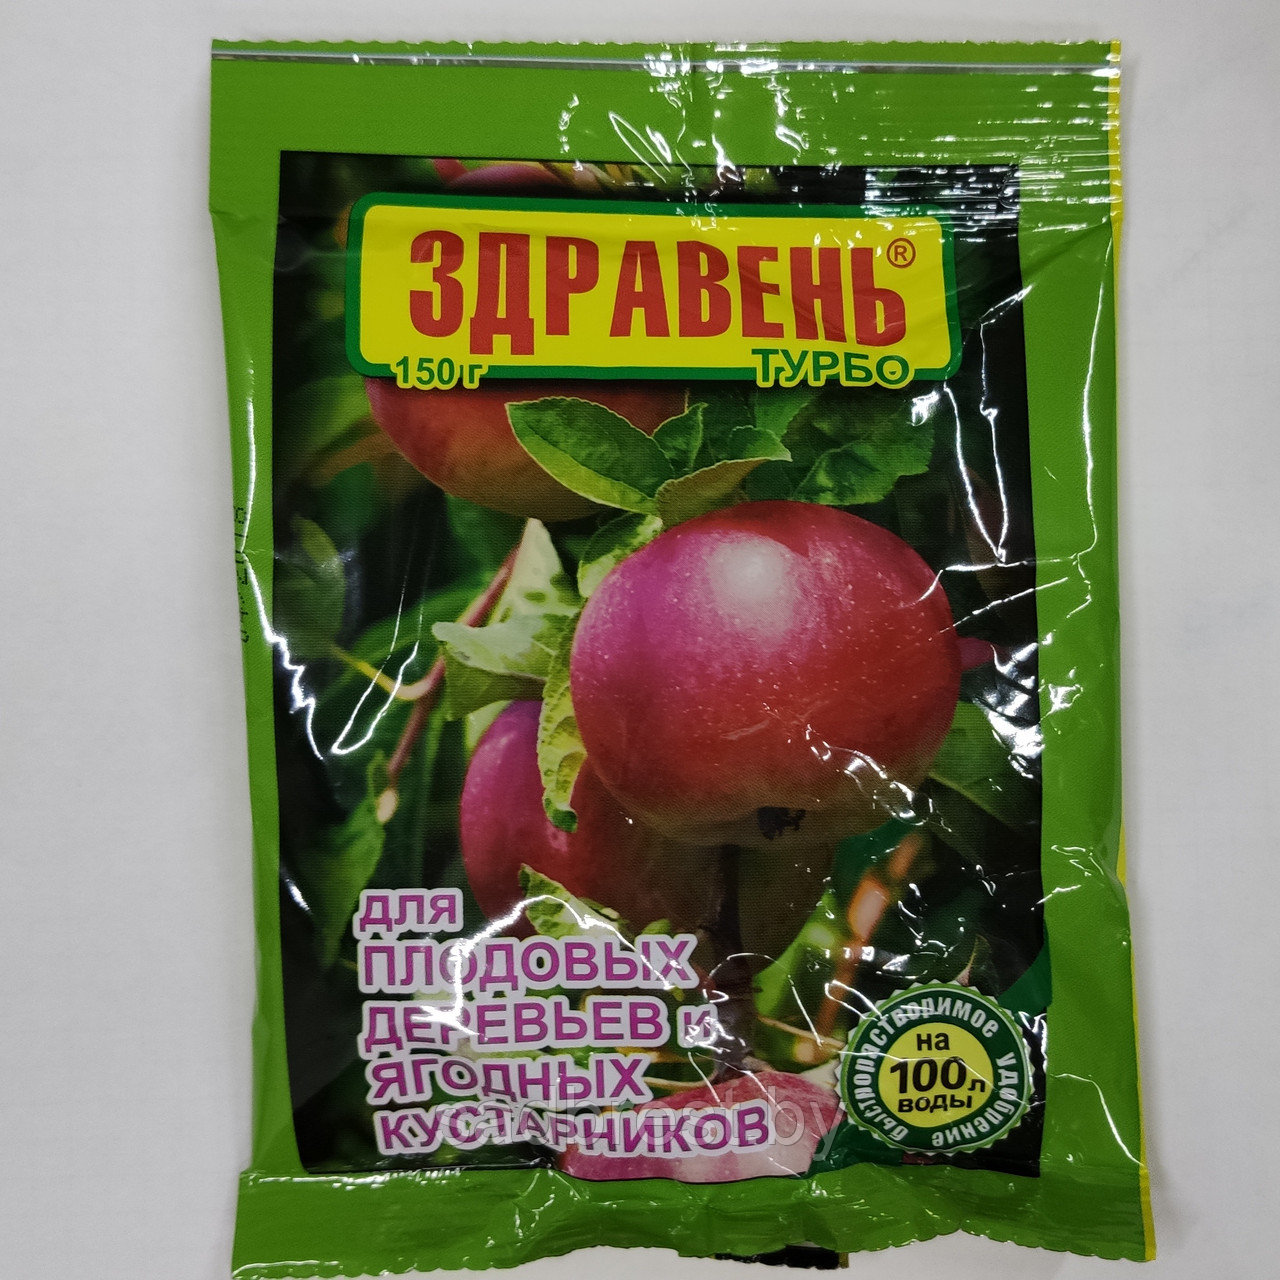 Удобрение для плодовых деревьев и ягодных кустарников  Здравень Турбо  150 гр